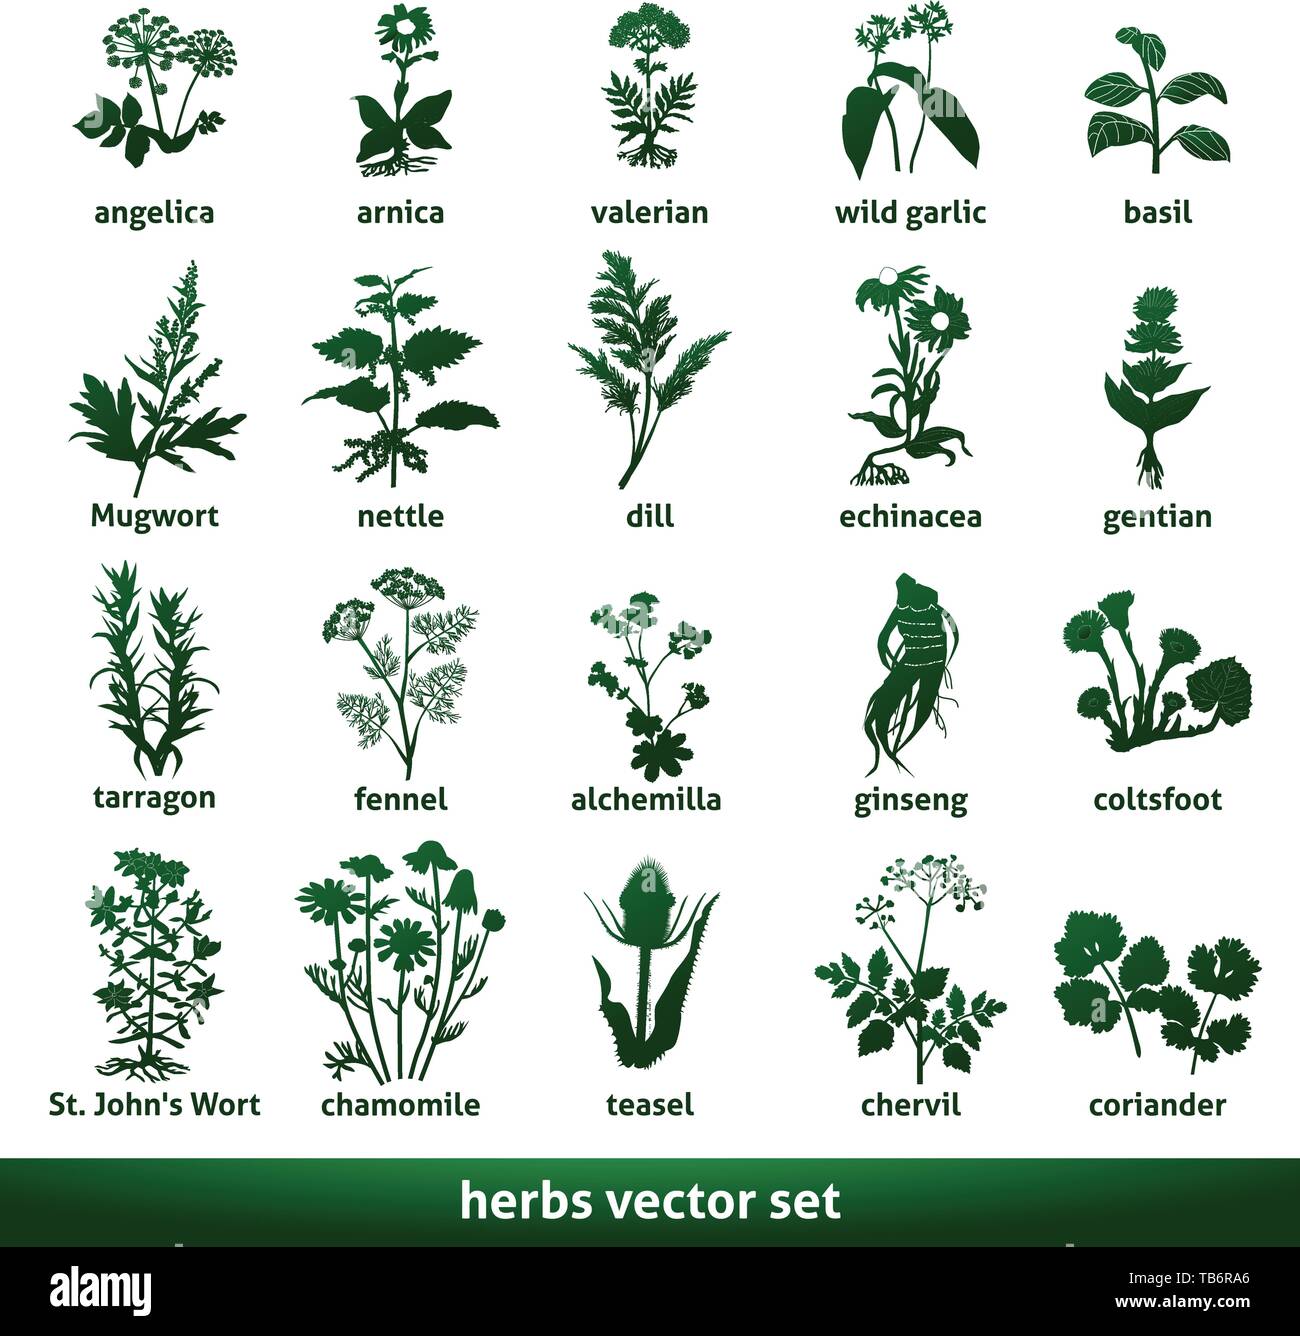 herbal medicinal vector set echinacea gentian johns wort Stock Vector